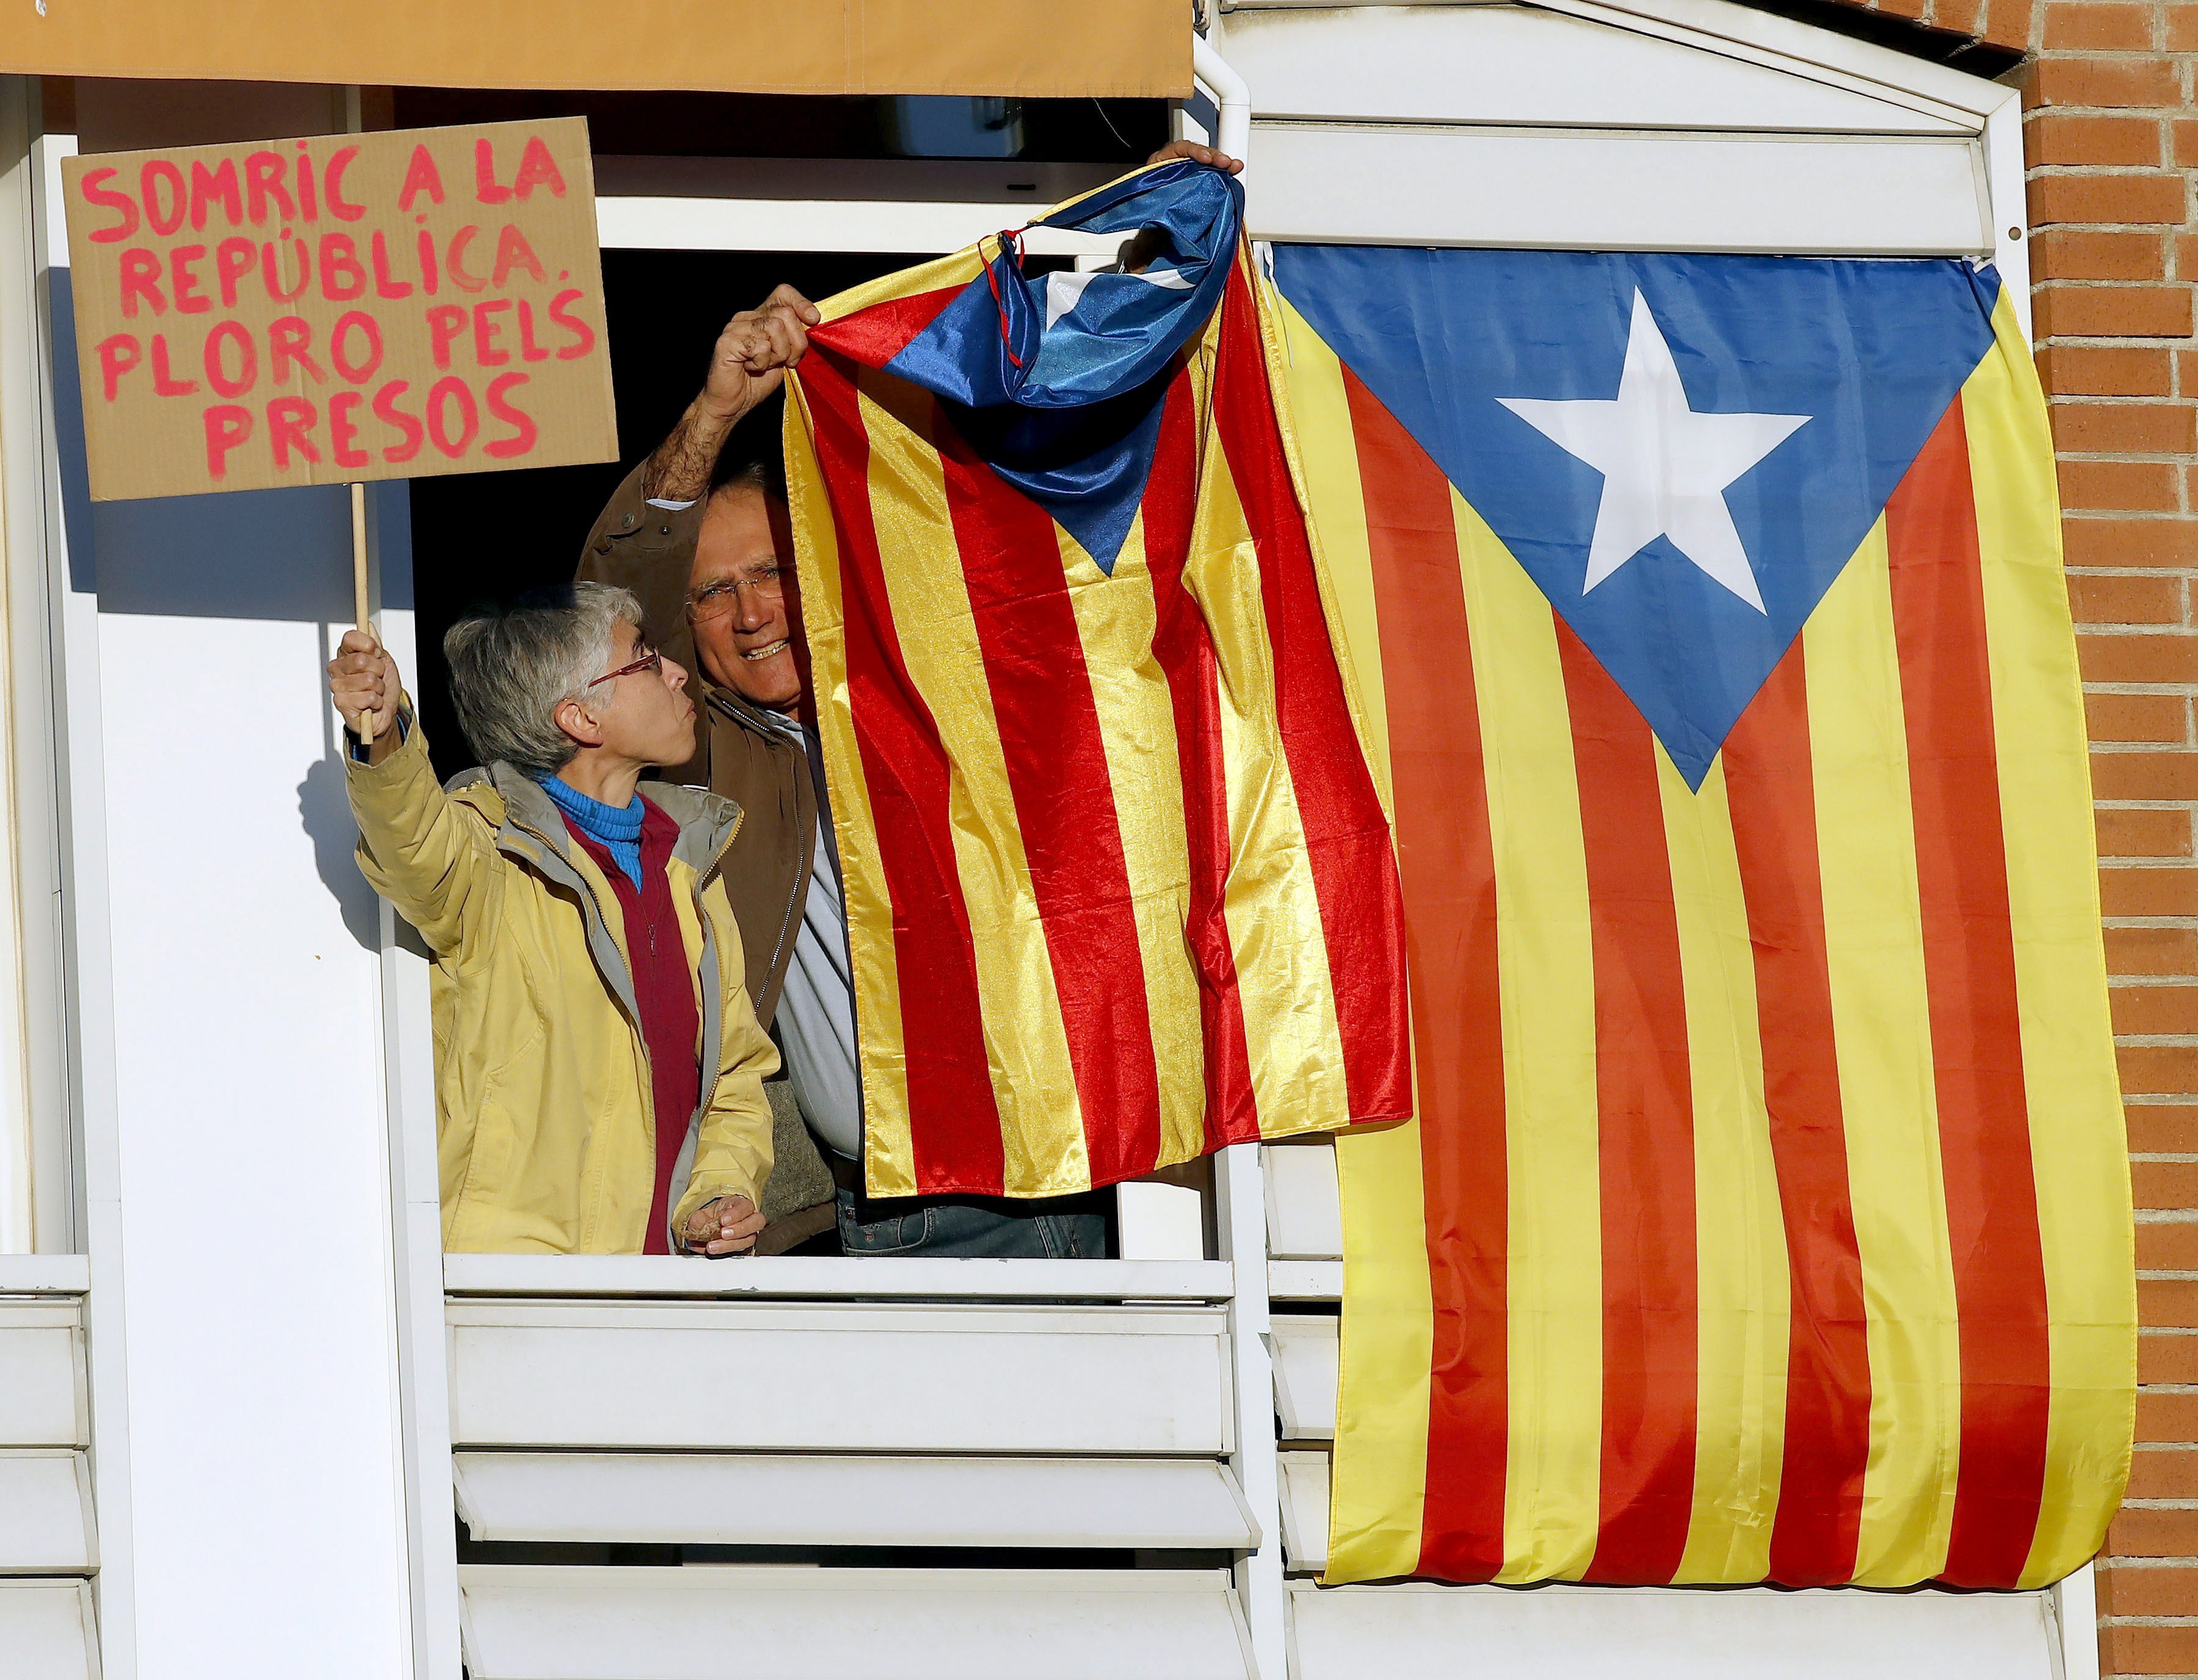 Кметът на Барселона е против независимостта, но отбеляза, че подкрепя един свободен и официален референдум по този въпрос.